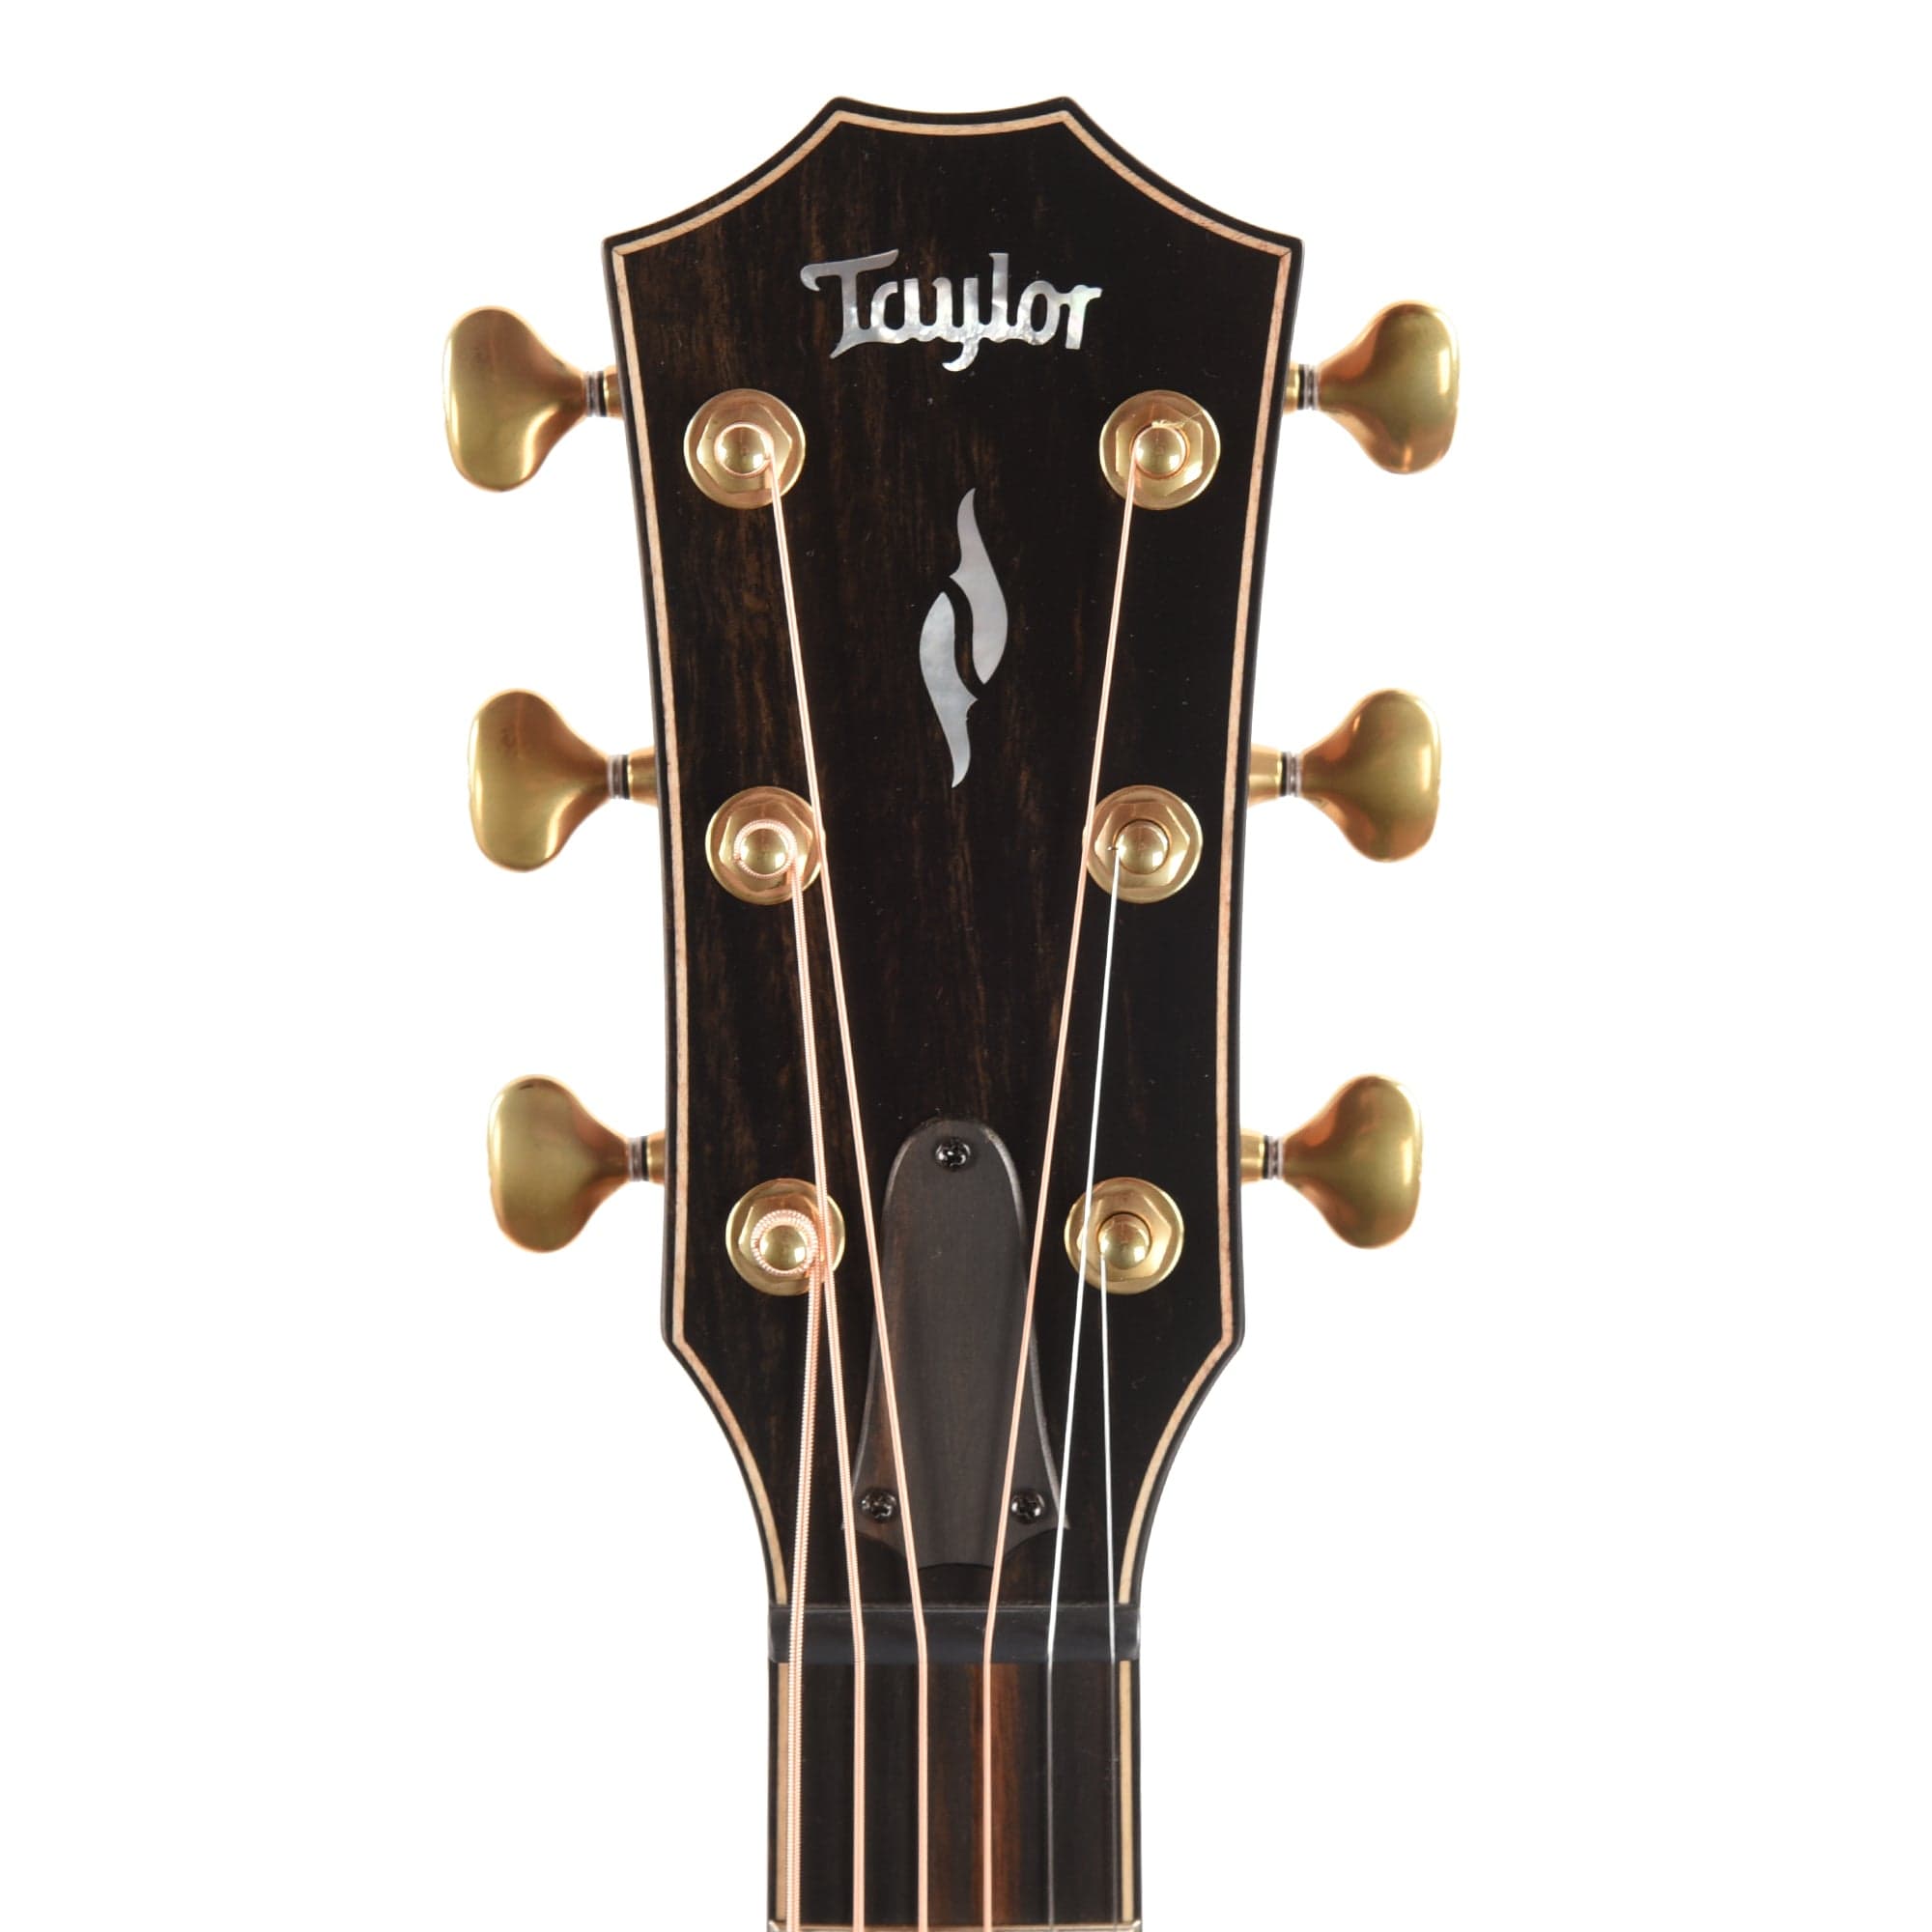 Taylor Builder's Edition 814ce Grand Auditorium Adirondack/Rosewood Natural ES2 Acoustic Guitars / OM and Auditorium